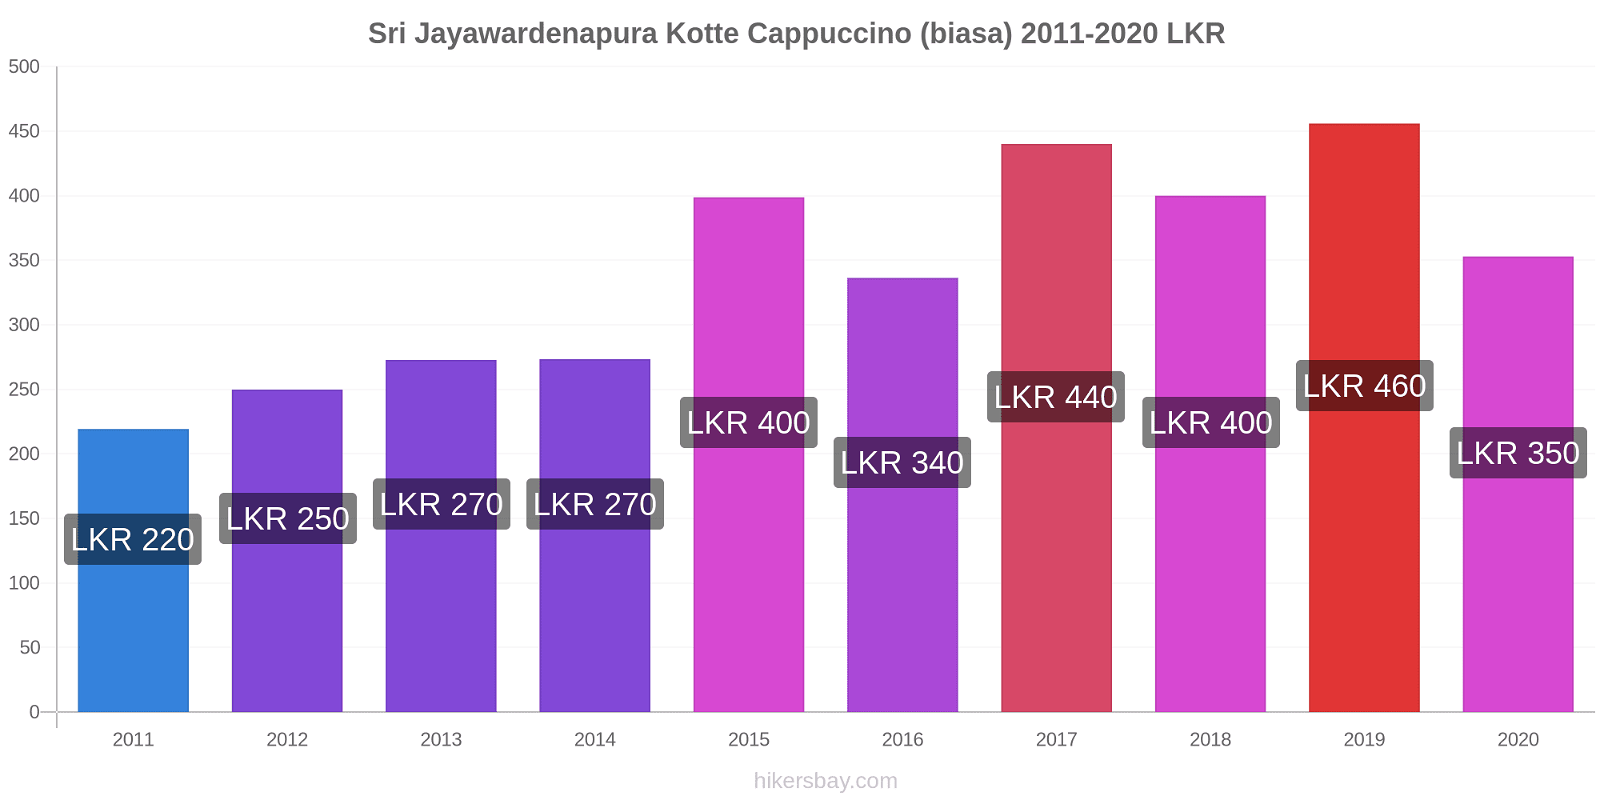 Sri Jayawardenapura Kotte perubahan harga Cappuccino (biasa) hikersbay.com